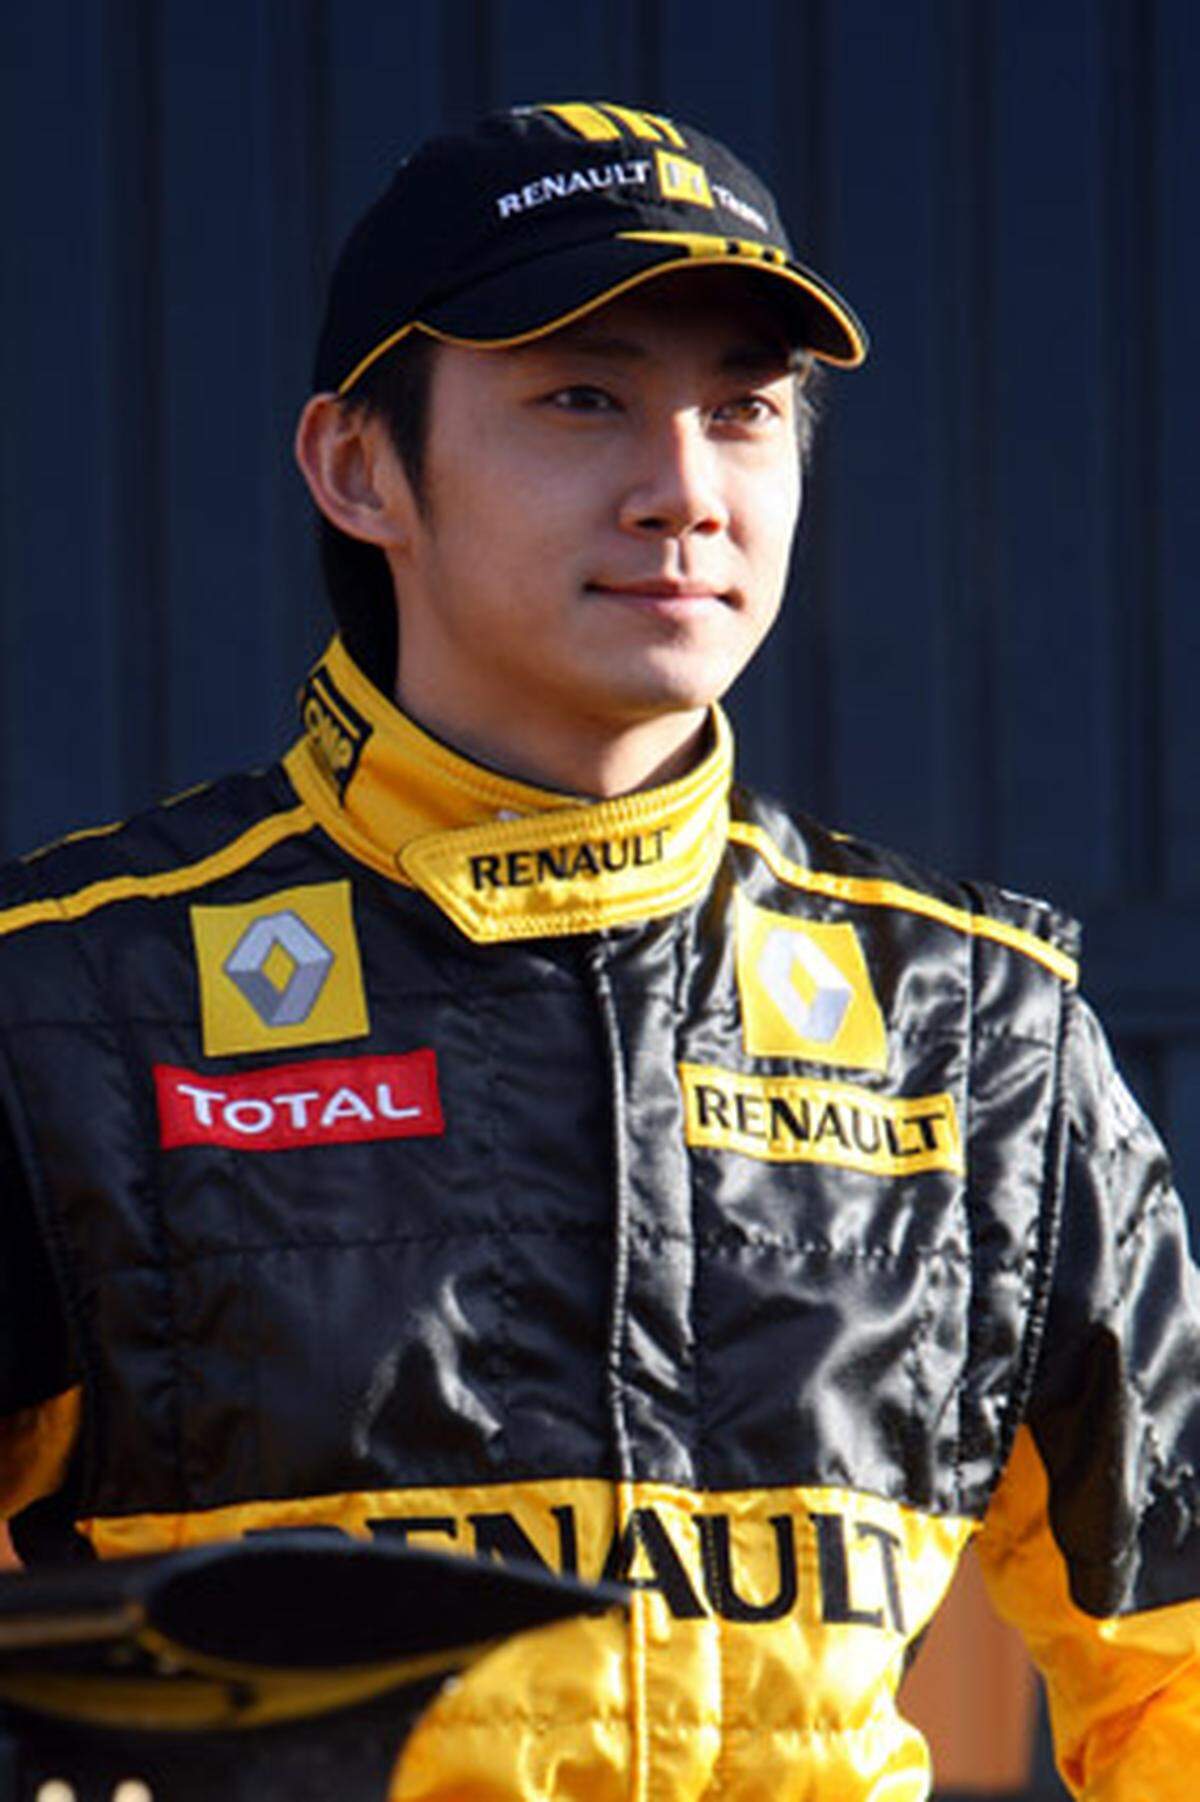 Auch bei der Position des Ersatzfahrers gibt es eine Premiere: Erstmals ist ein chinesischer Fahrer Teil eines Formel-1-Teams. Der 27-jährige Ho-Pin Tung wurde in den Niederlanden geboren und wird 2010 auch in der Nachwuchsklasse GP2 antreten. "Das ist eine große Sache. Dieser Schritt dürfte ein Durchbruch sein, was die Aufmerksamkeit der Medien betrifft", meinte Tung bei seiner Präsentation.